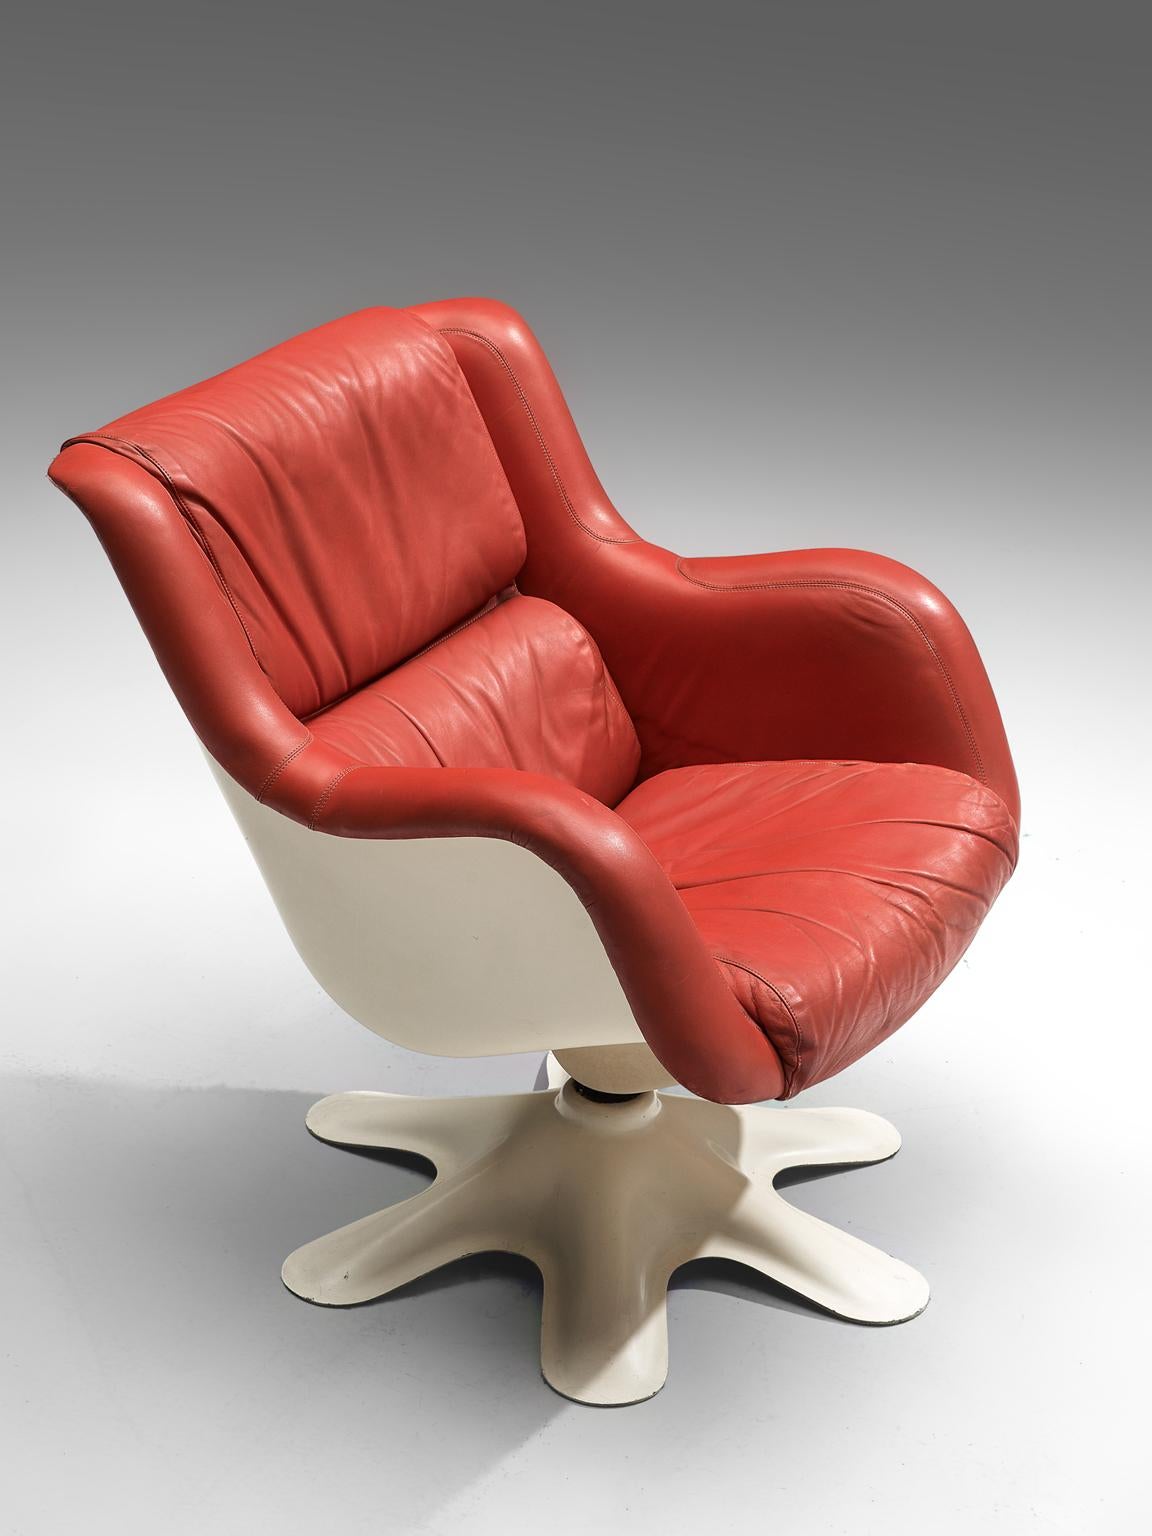 Metal Yrjo Kukkapuro 'Karuselli' Lounge Chair in Red Leather